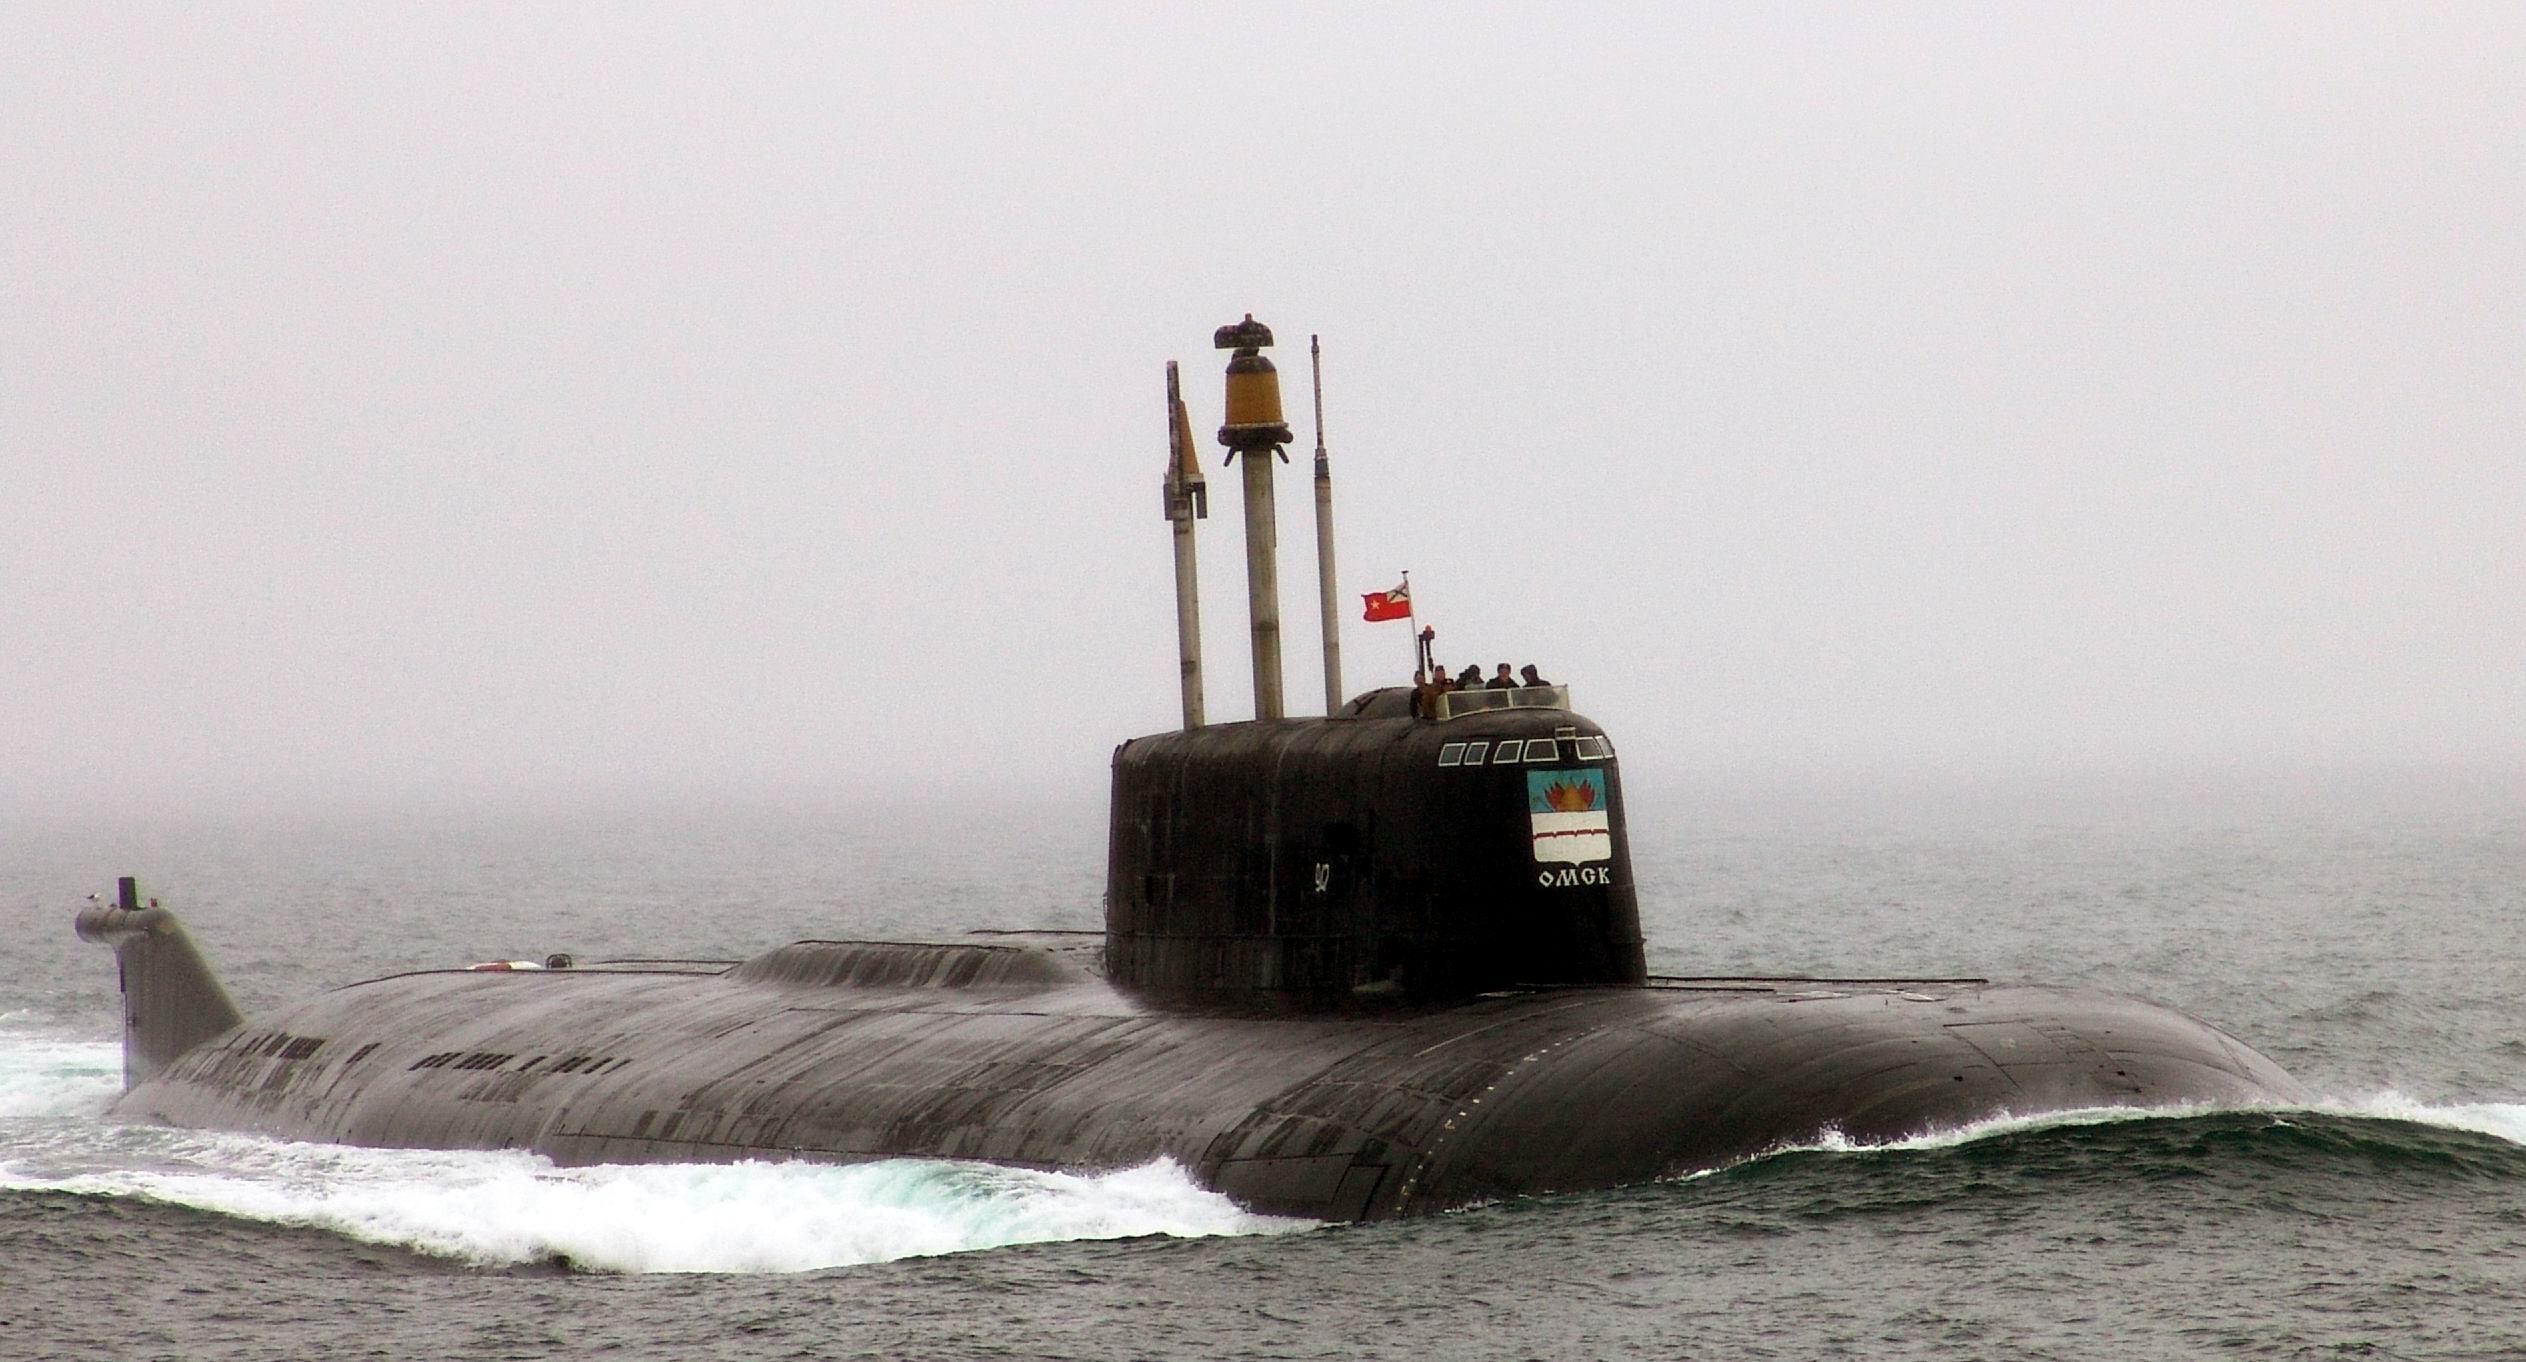 Подводный флот тихоокеанского флота. Подводные лодки проекта 949а «Антей». Атомная подводная лодка к-186 «Омск». Подводная лодка Омск проекта 949а. Атомный подводный крейсер к-186 "Омск".